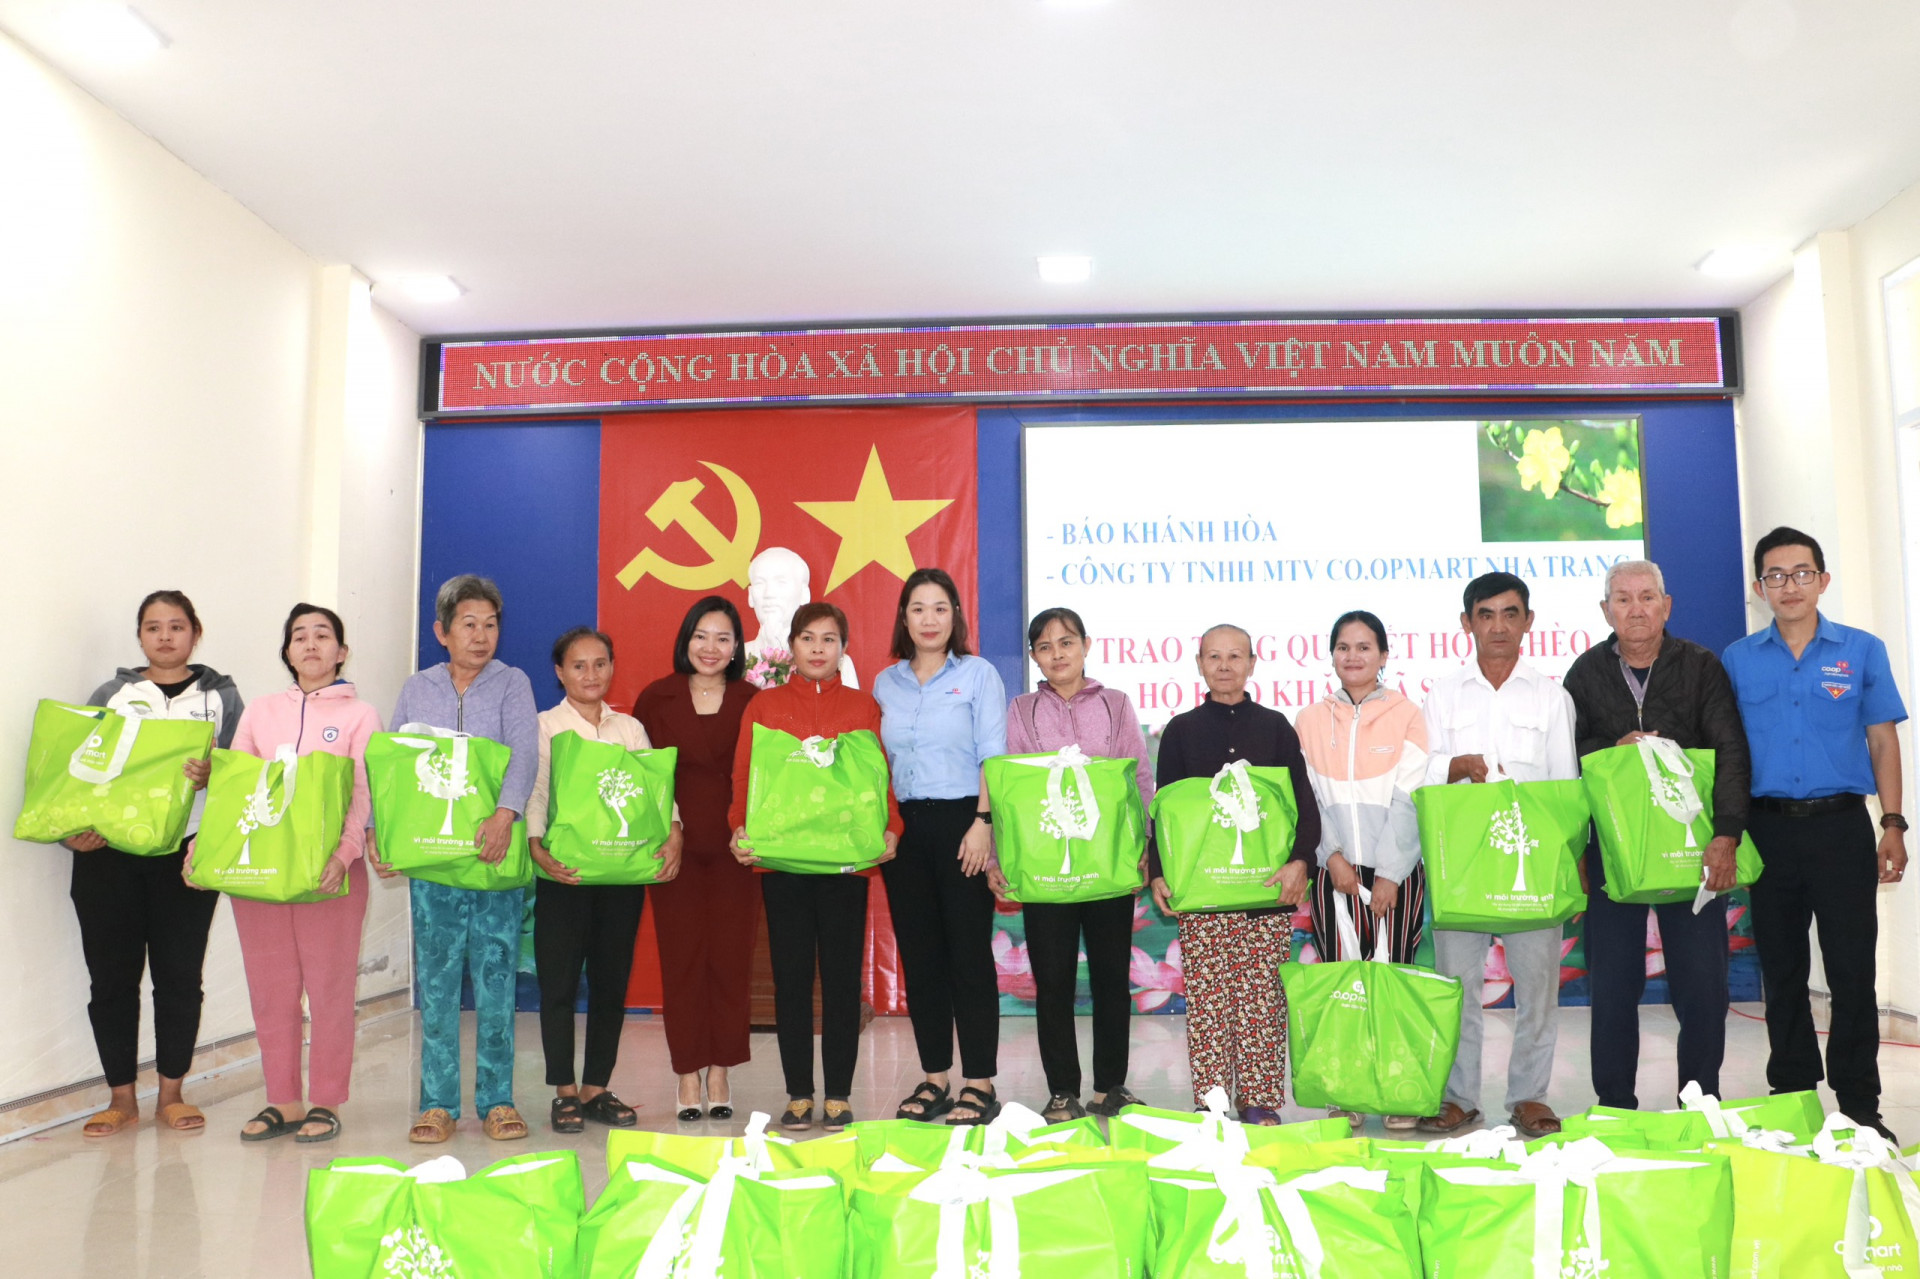 Bà Thái Thị Lệ Hằng - Tổng Biên tập Báo Khánh Hòa (thứ 5 từ trái qua) và đại diện Siêu thị Co.opmart Nha Trang trao quà cho người dân